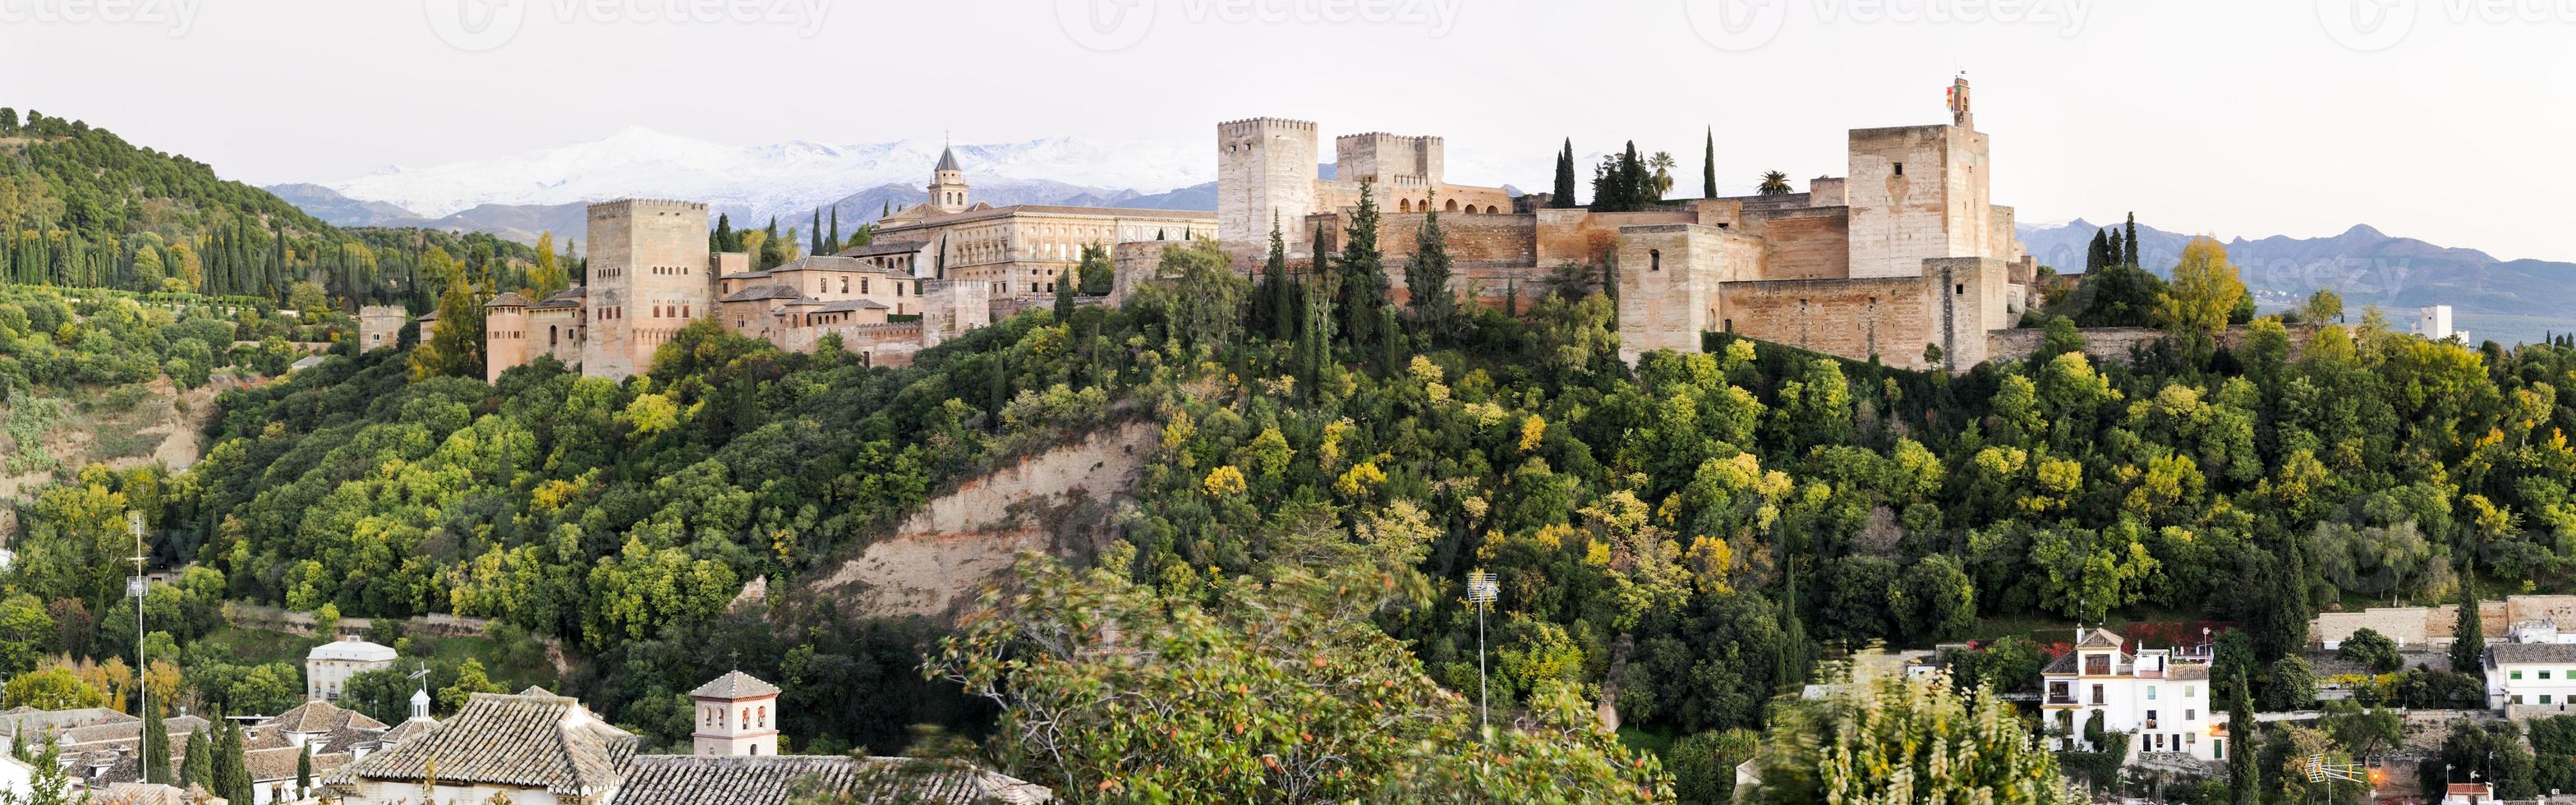 panorama de l'alhambra et du paysage de grenade depuis l'albaicin photo